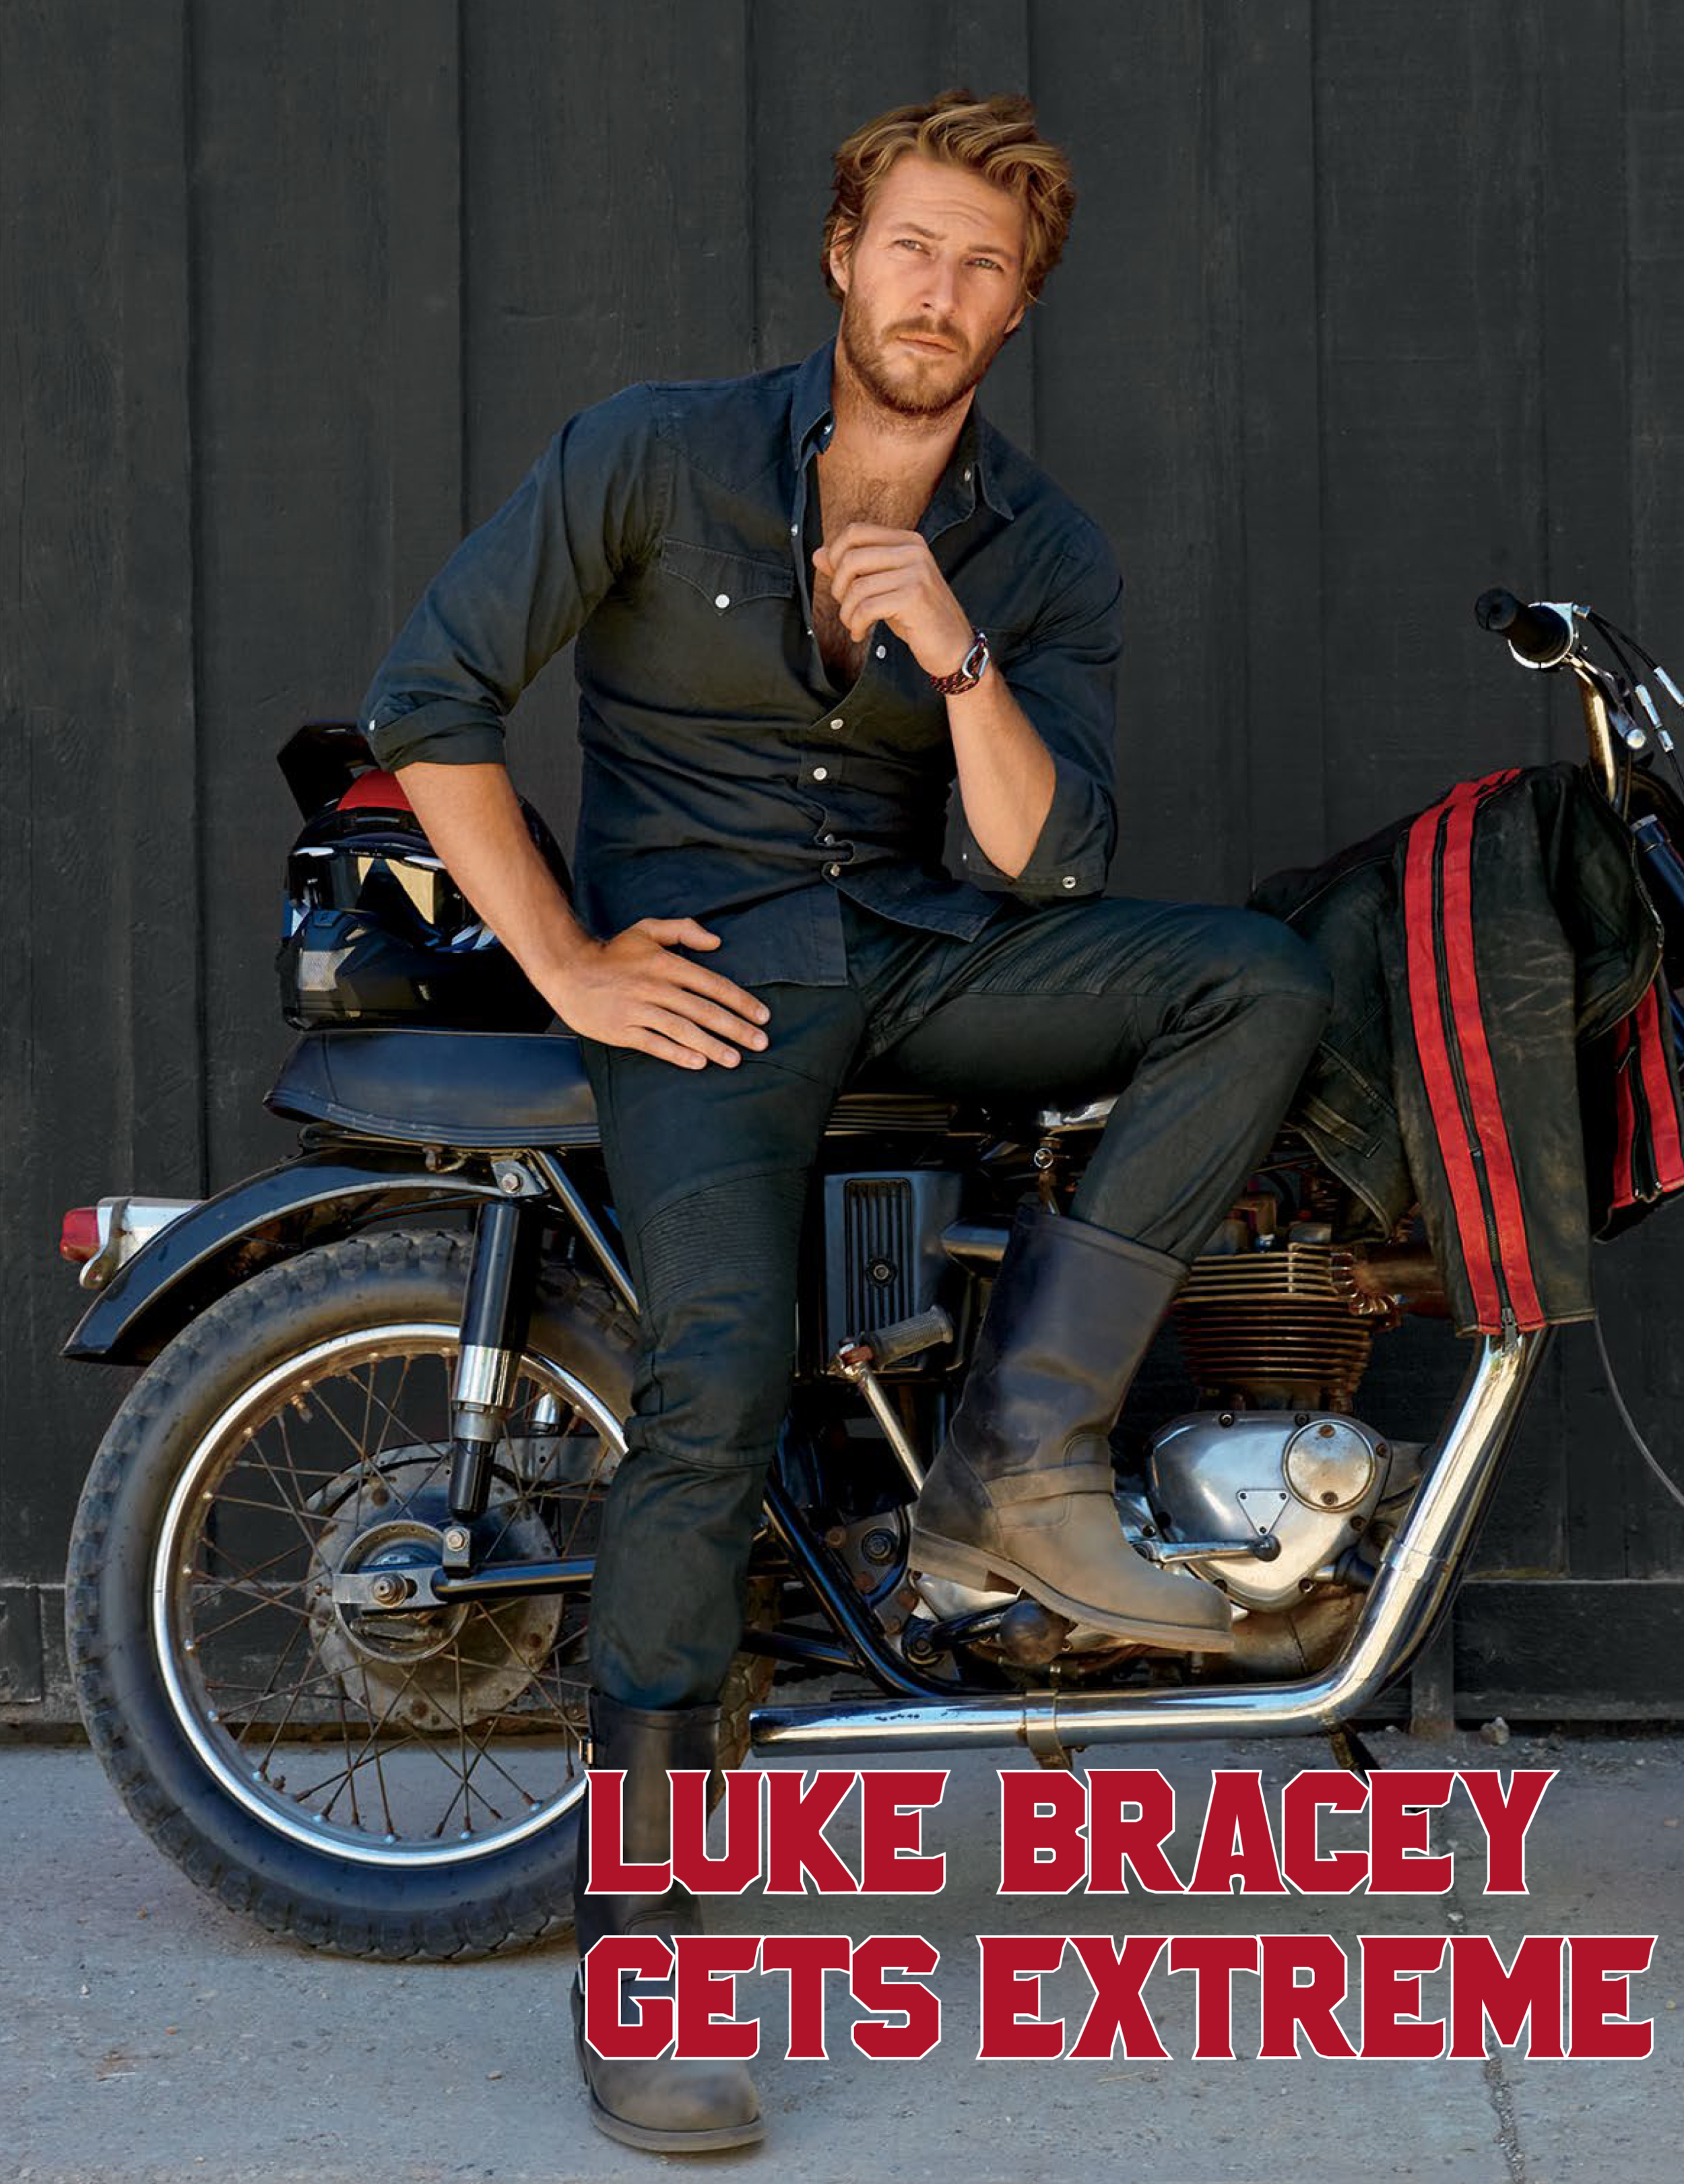 Luke Bracey